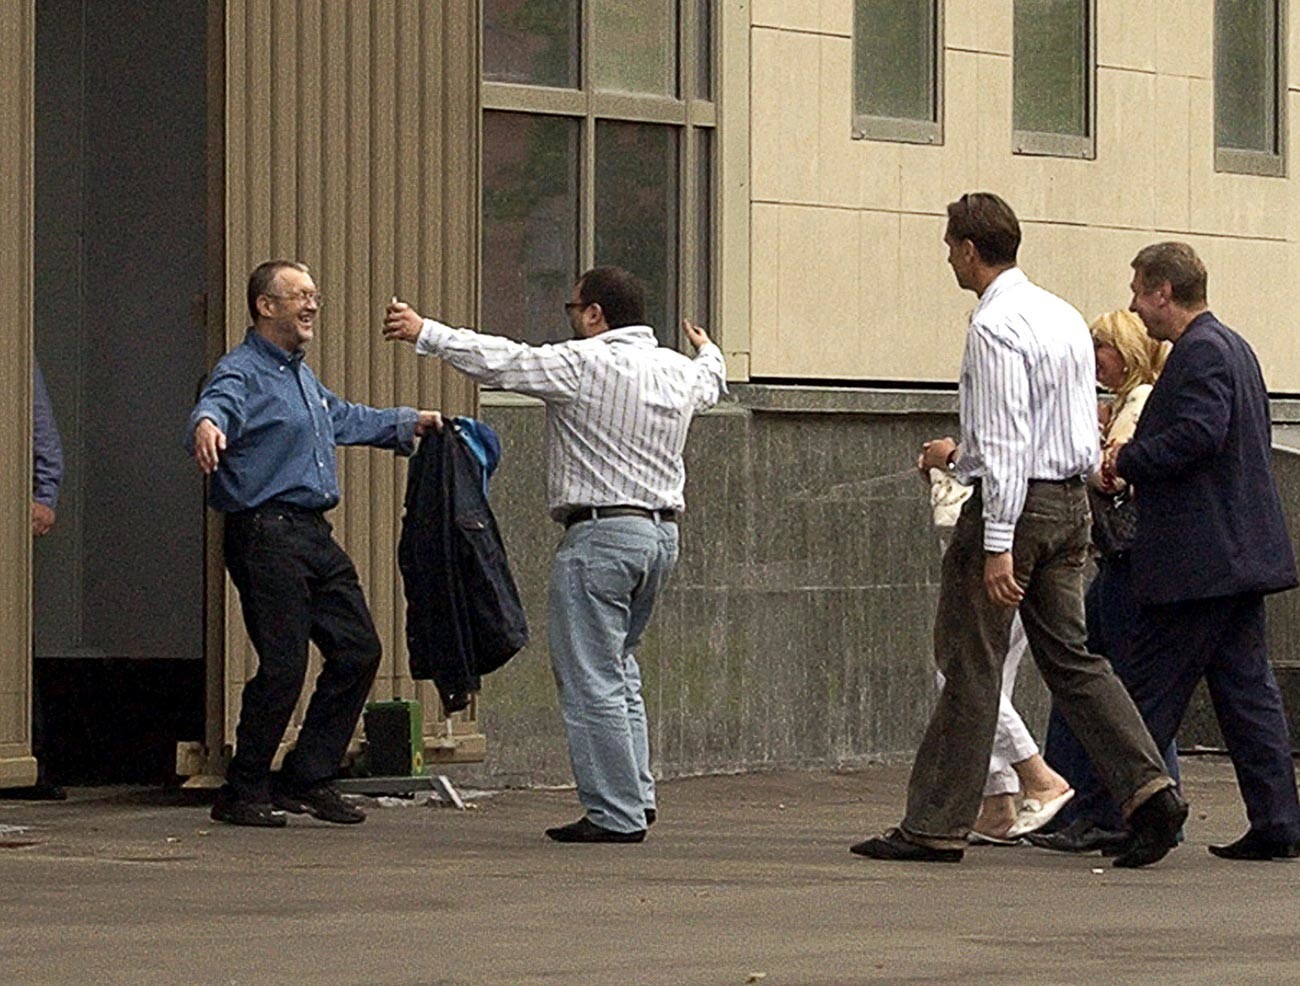 O chefe da máfia russa Ivankov recebido por familiares ao deixar o tribunal em Moscou.